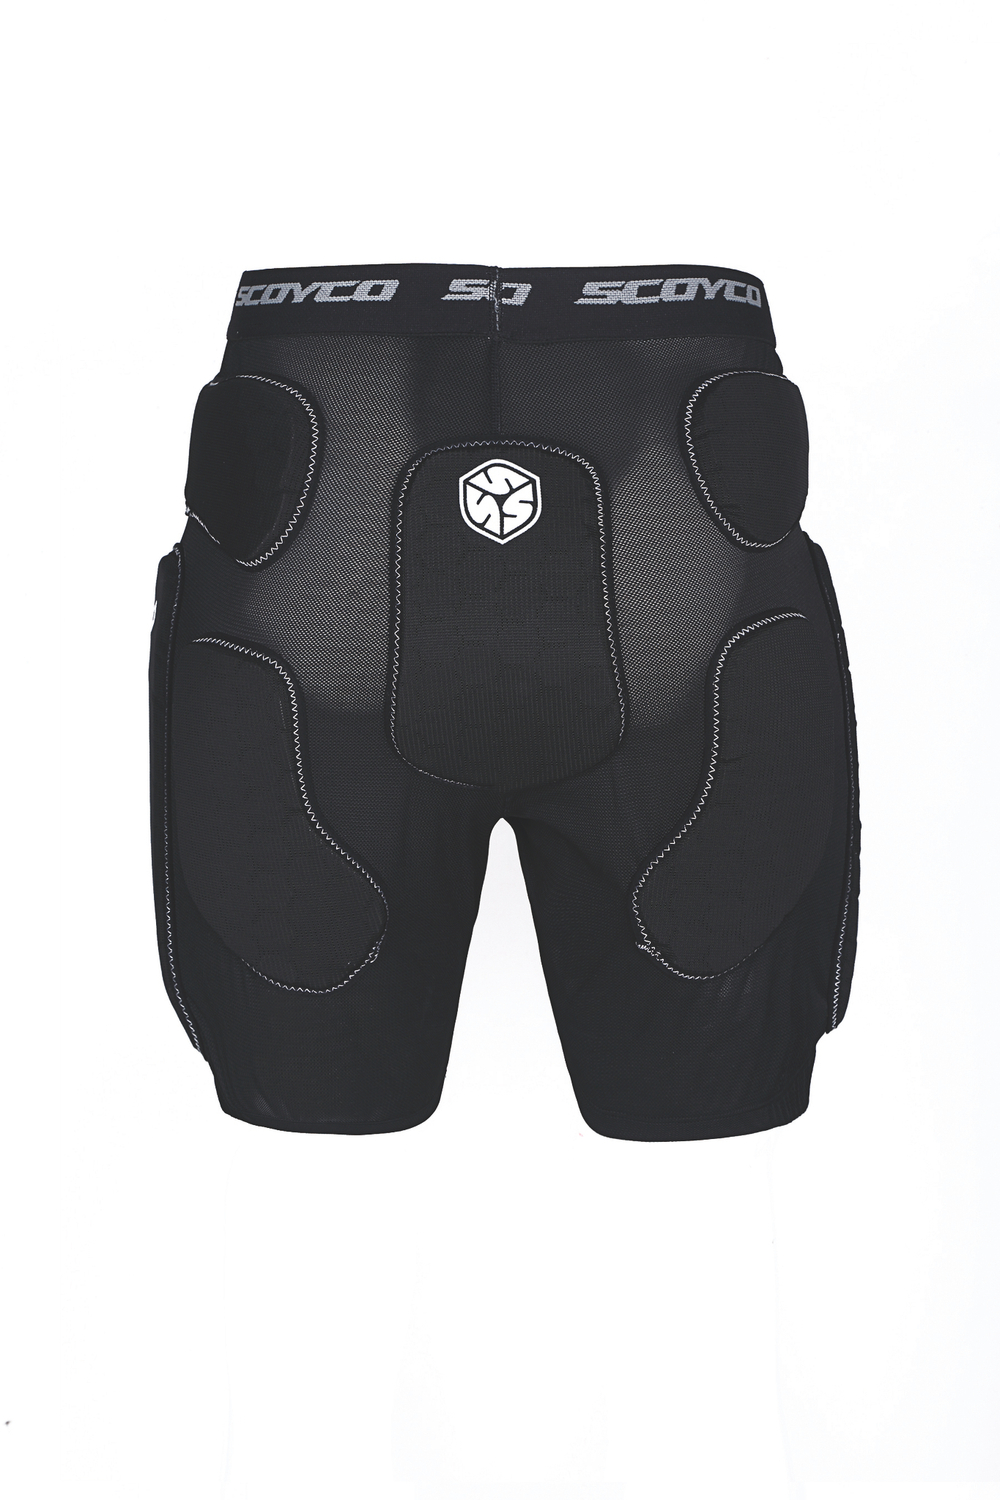 шорты защитные Scoyco PM01 чёрные XL